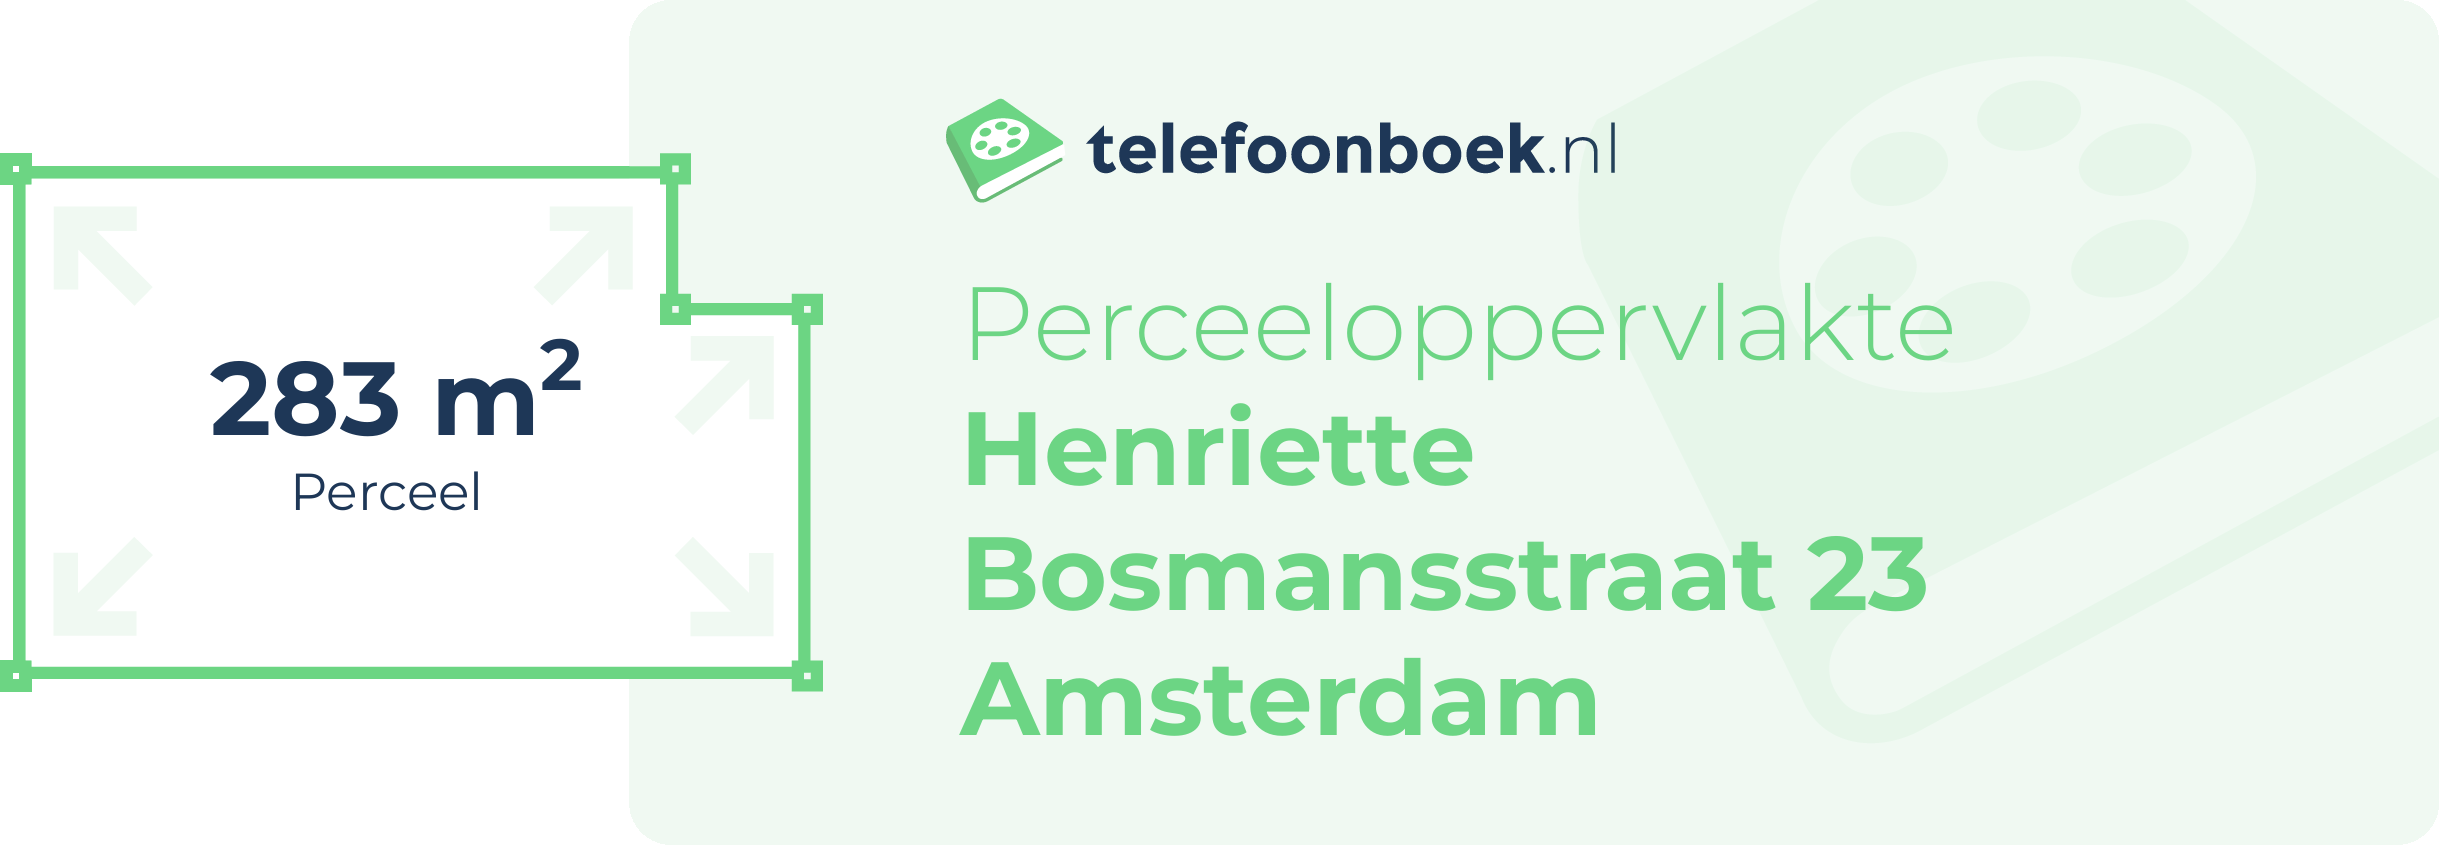 Perceeloppervlakte Henriette Bosmansstraat 23 Amsterdam